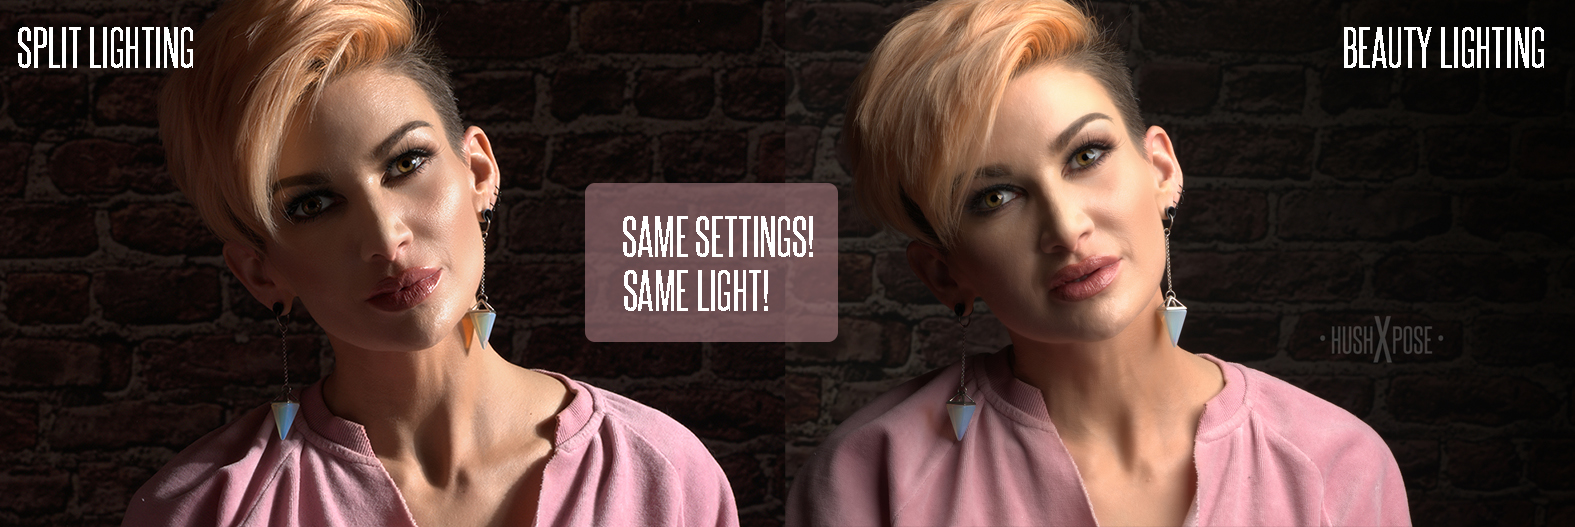 split lighting vs beauty lighting image 